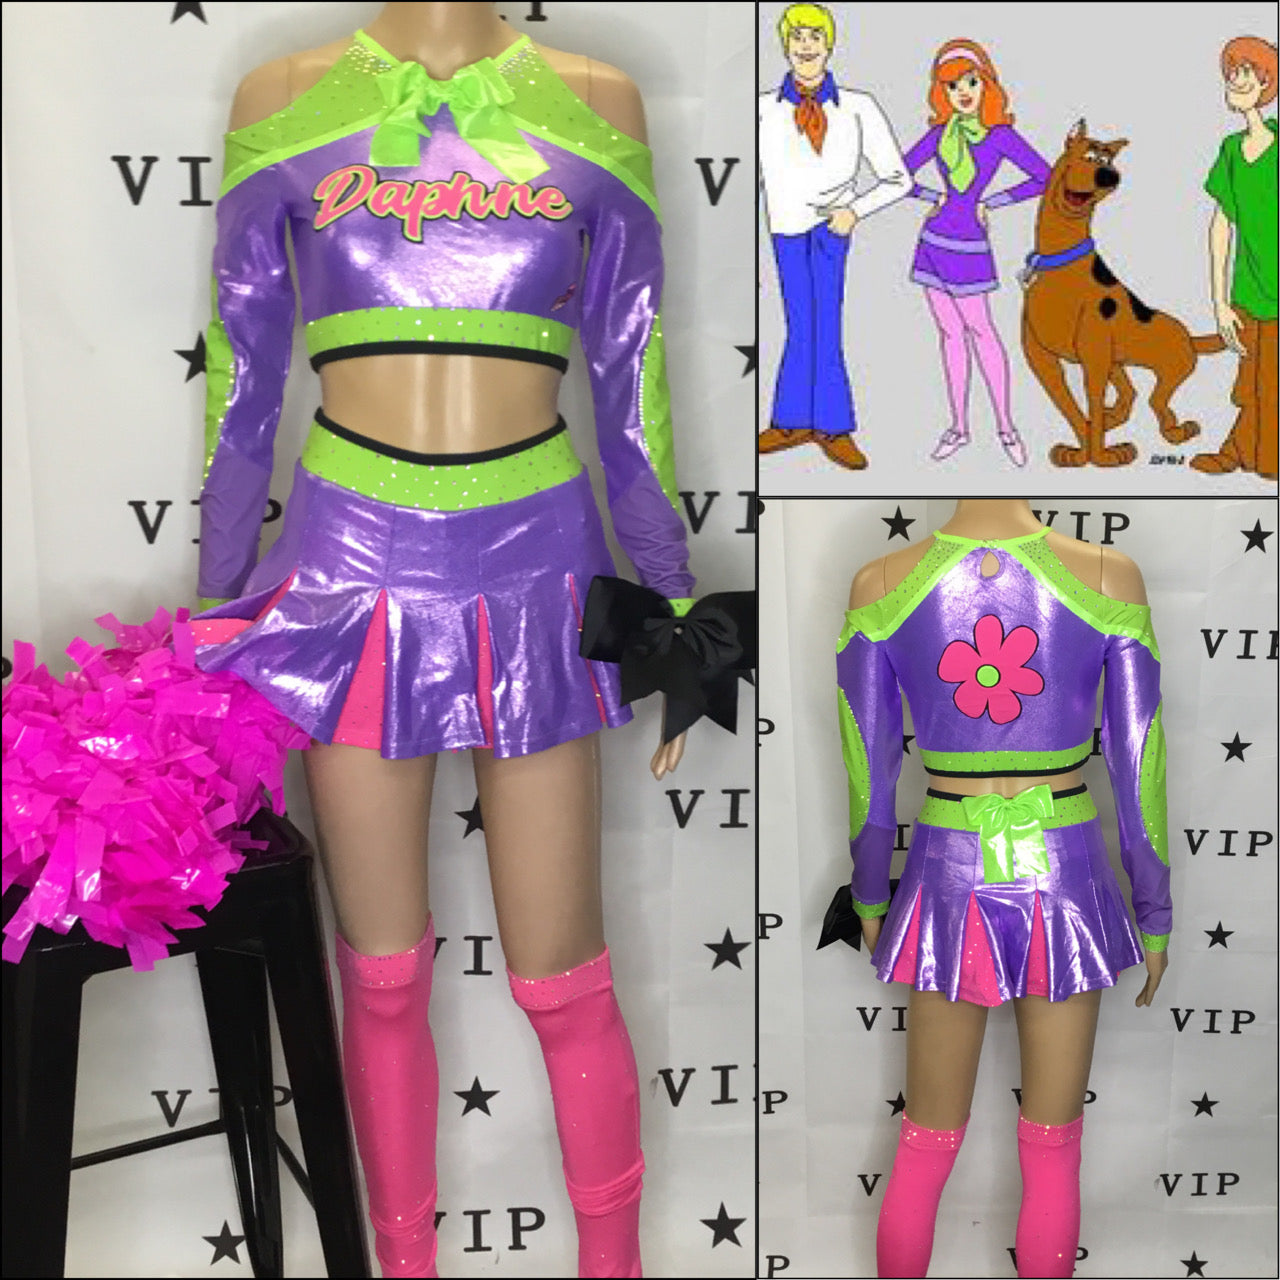 Daphne scooby doo cheer inspired uniform